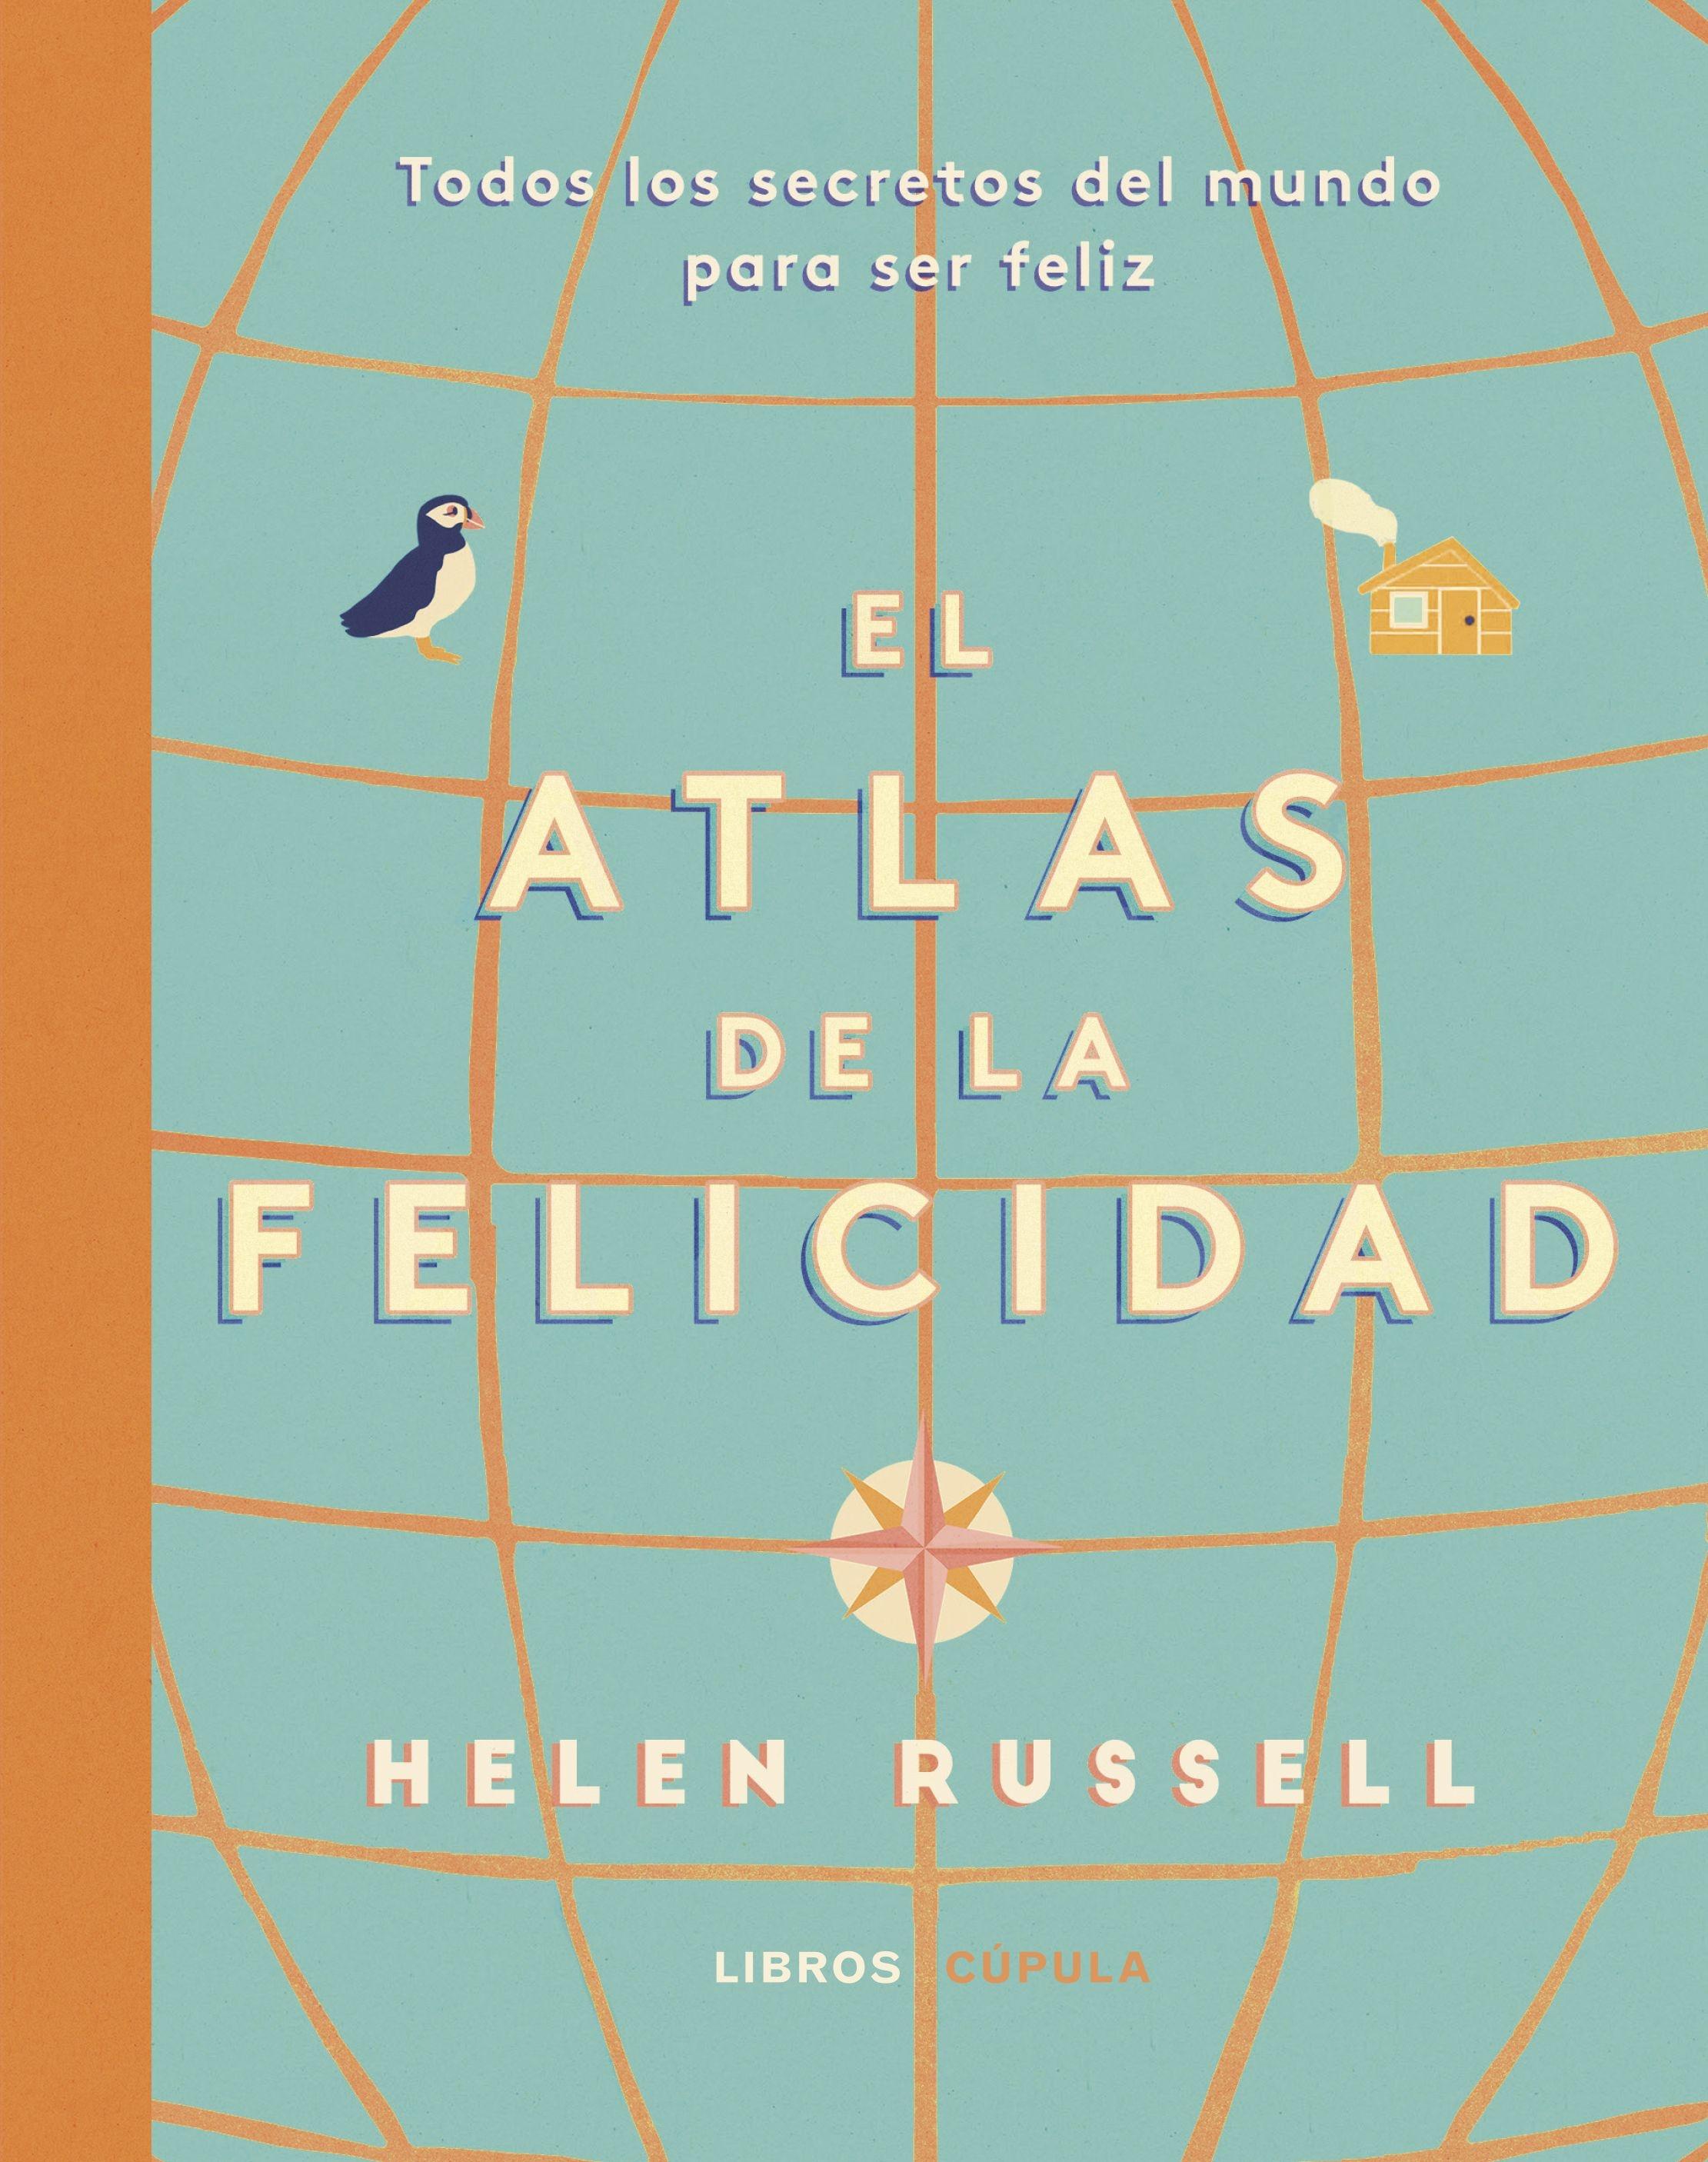 Atlas de la felicidad "Todos los secretos del mundo para ser feliz". 